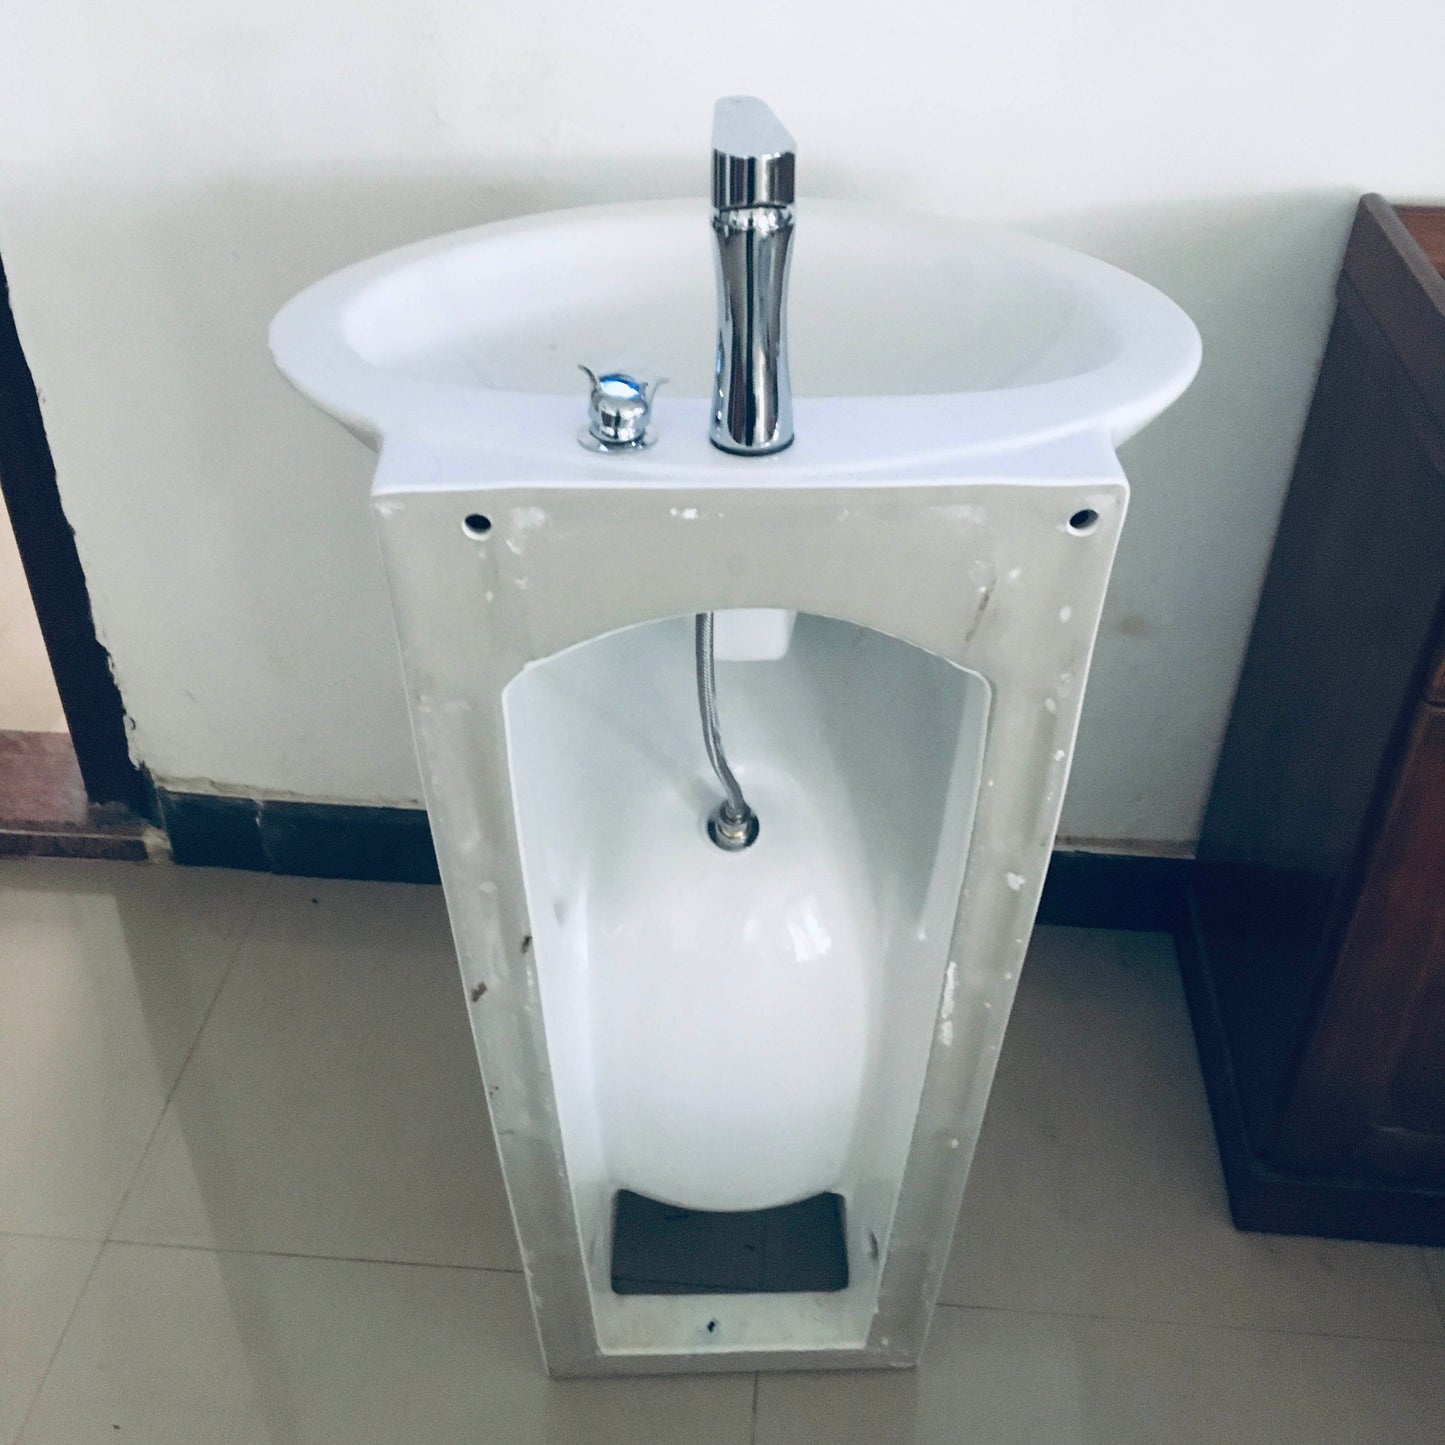 Mosque sanitary lavabo sink wudu wash foot basin pedestal basins Washing Station Iraq Iran feet washer wudu mate basin sink